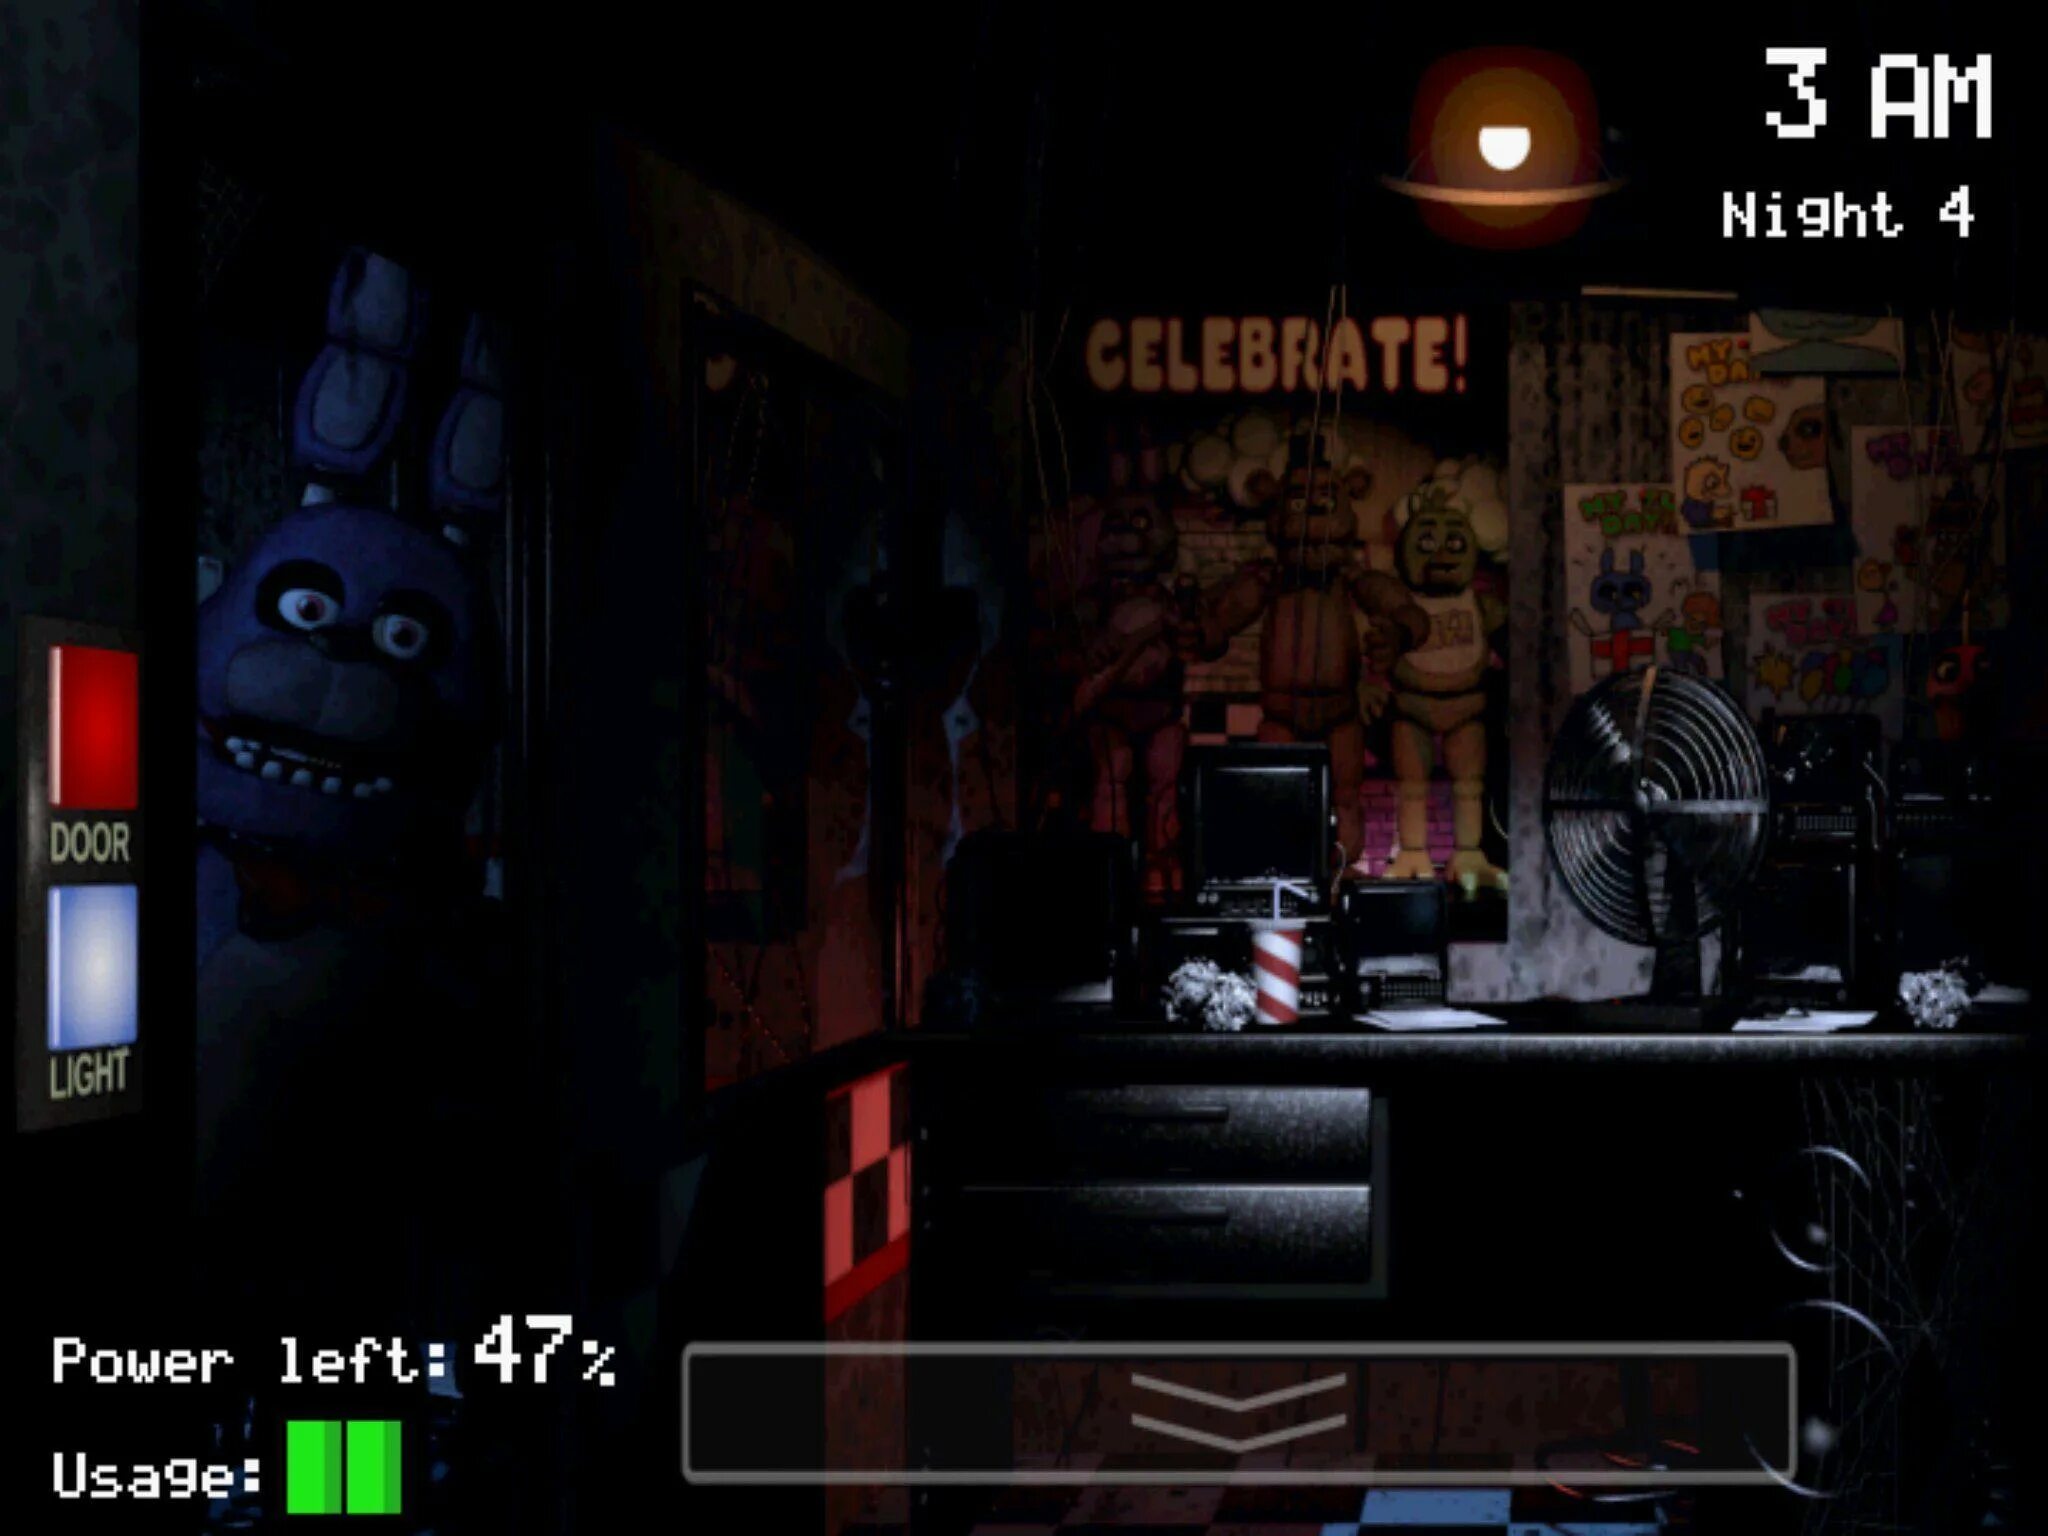 Проходит игру фнаф. Five Nights at Freddy's 1 Скриншоты. Фредди из игры ФНАФ 1. 5 Ночей с Фредди Скриншоты. ФНАФ 1 скрины игры.